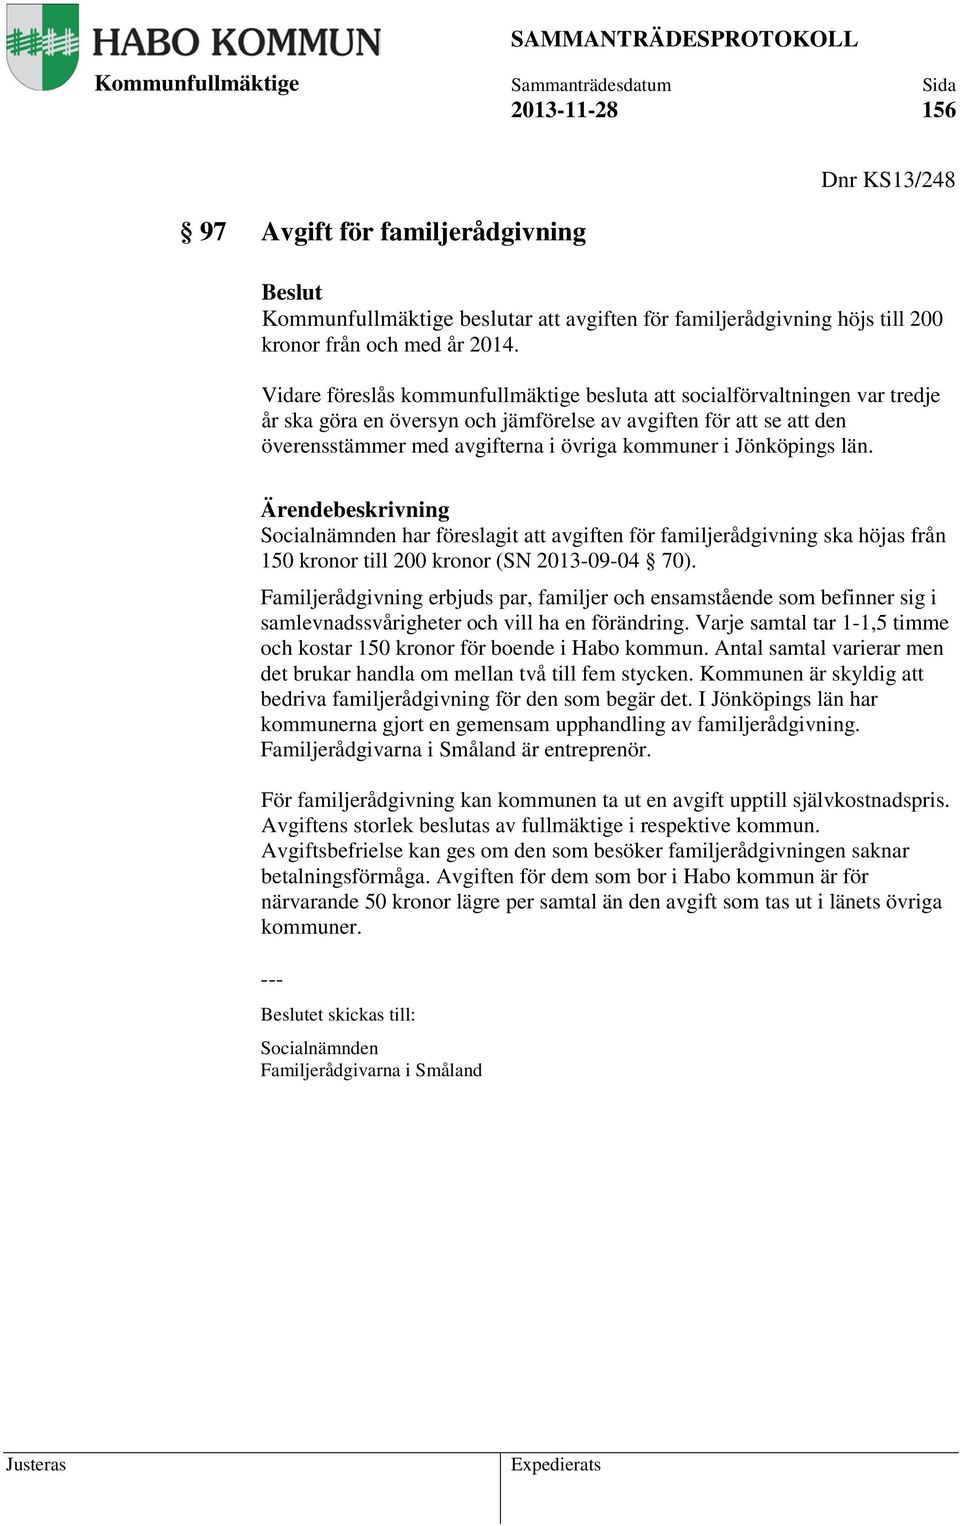 Jönköpings län. Ärendebeskrivning Socialnämnden har föreslagit att avgiften för familjerådgivning ska höjas från 150 kronor till 200 kronor (SN 2013-09-04 70).